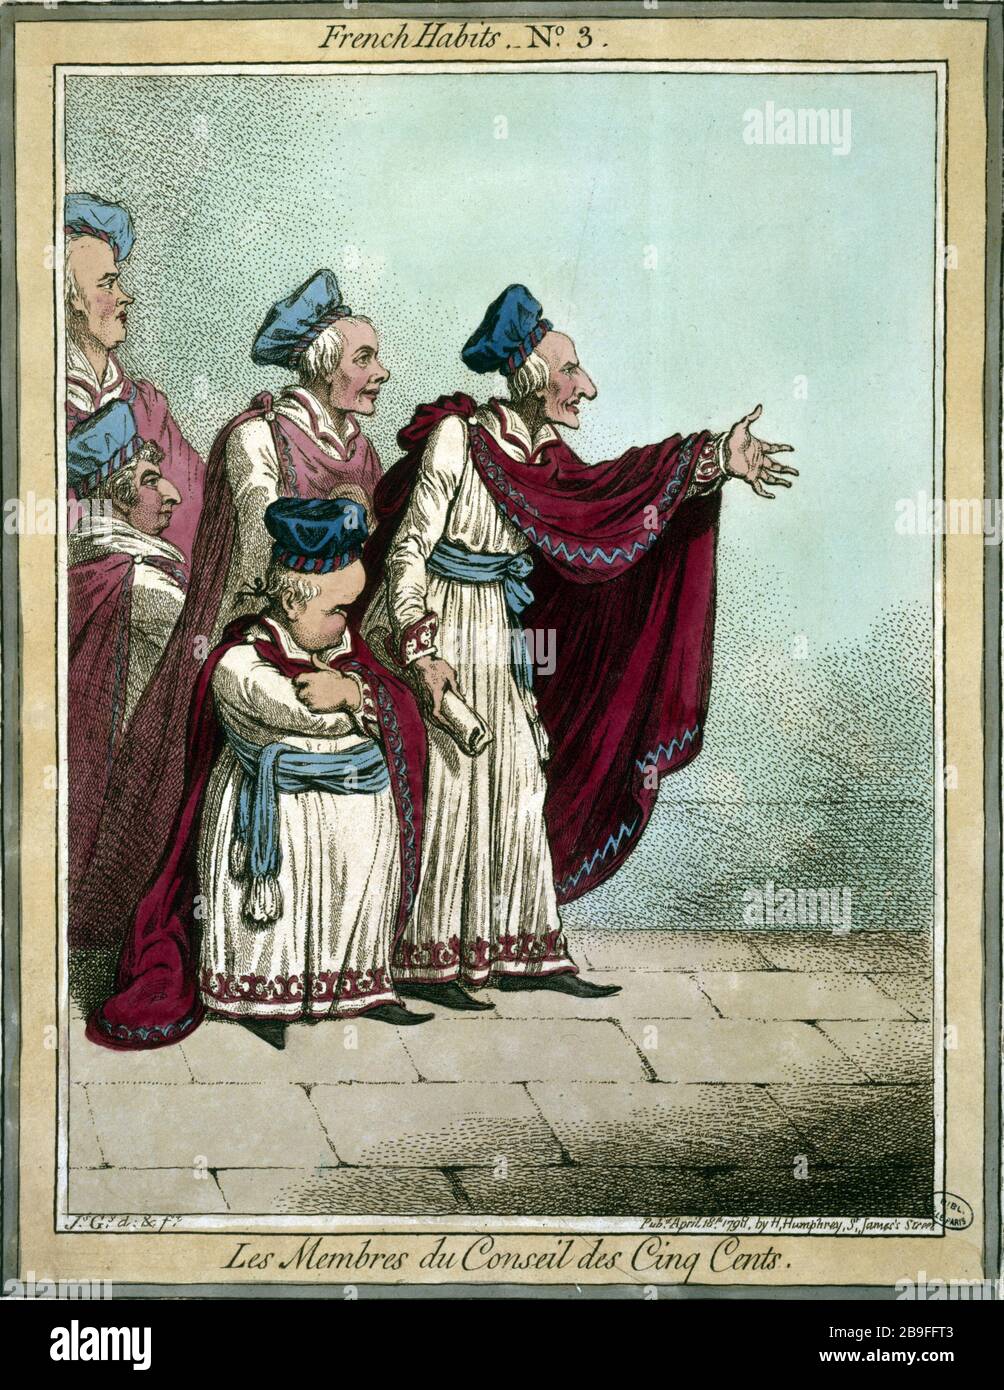 FRENCH CLOTHES, NUMBER 3: THE BOARD OF FIVE CENTS James Gillray (1757-1815). "French habits, numéro 3 : les membres du Conseil des Cinq Cents". Gravure. Paris, musée Carnavalet. Stock Photo